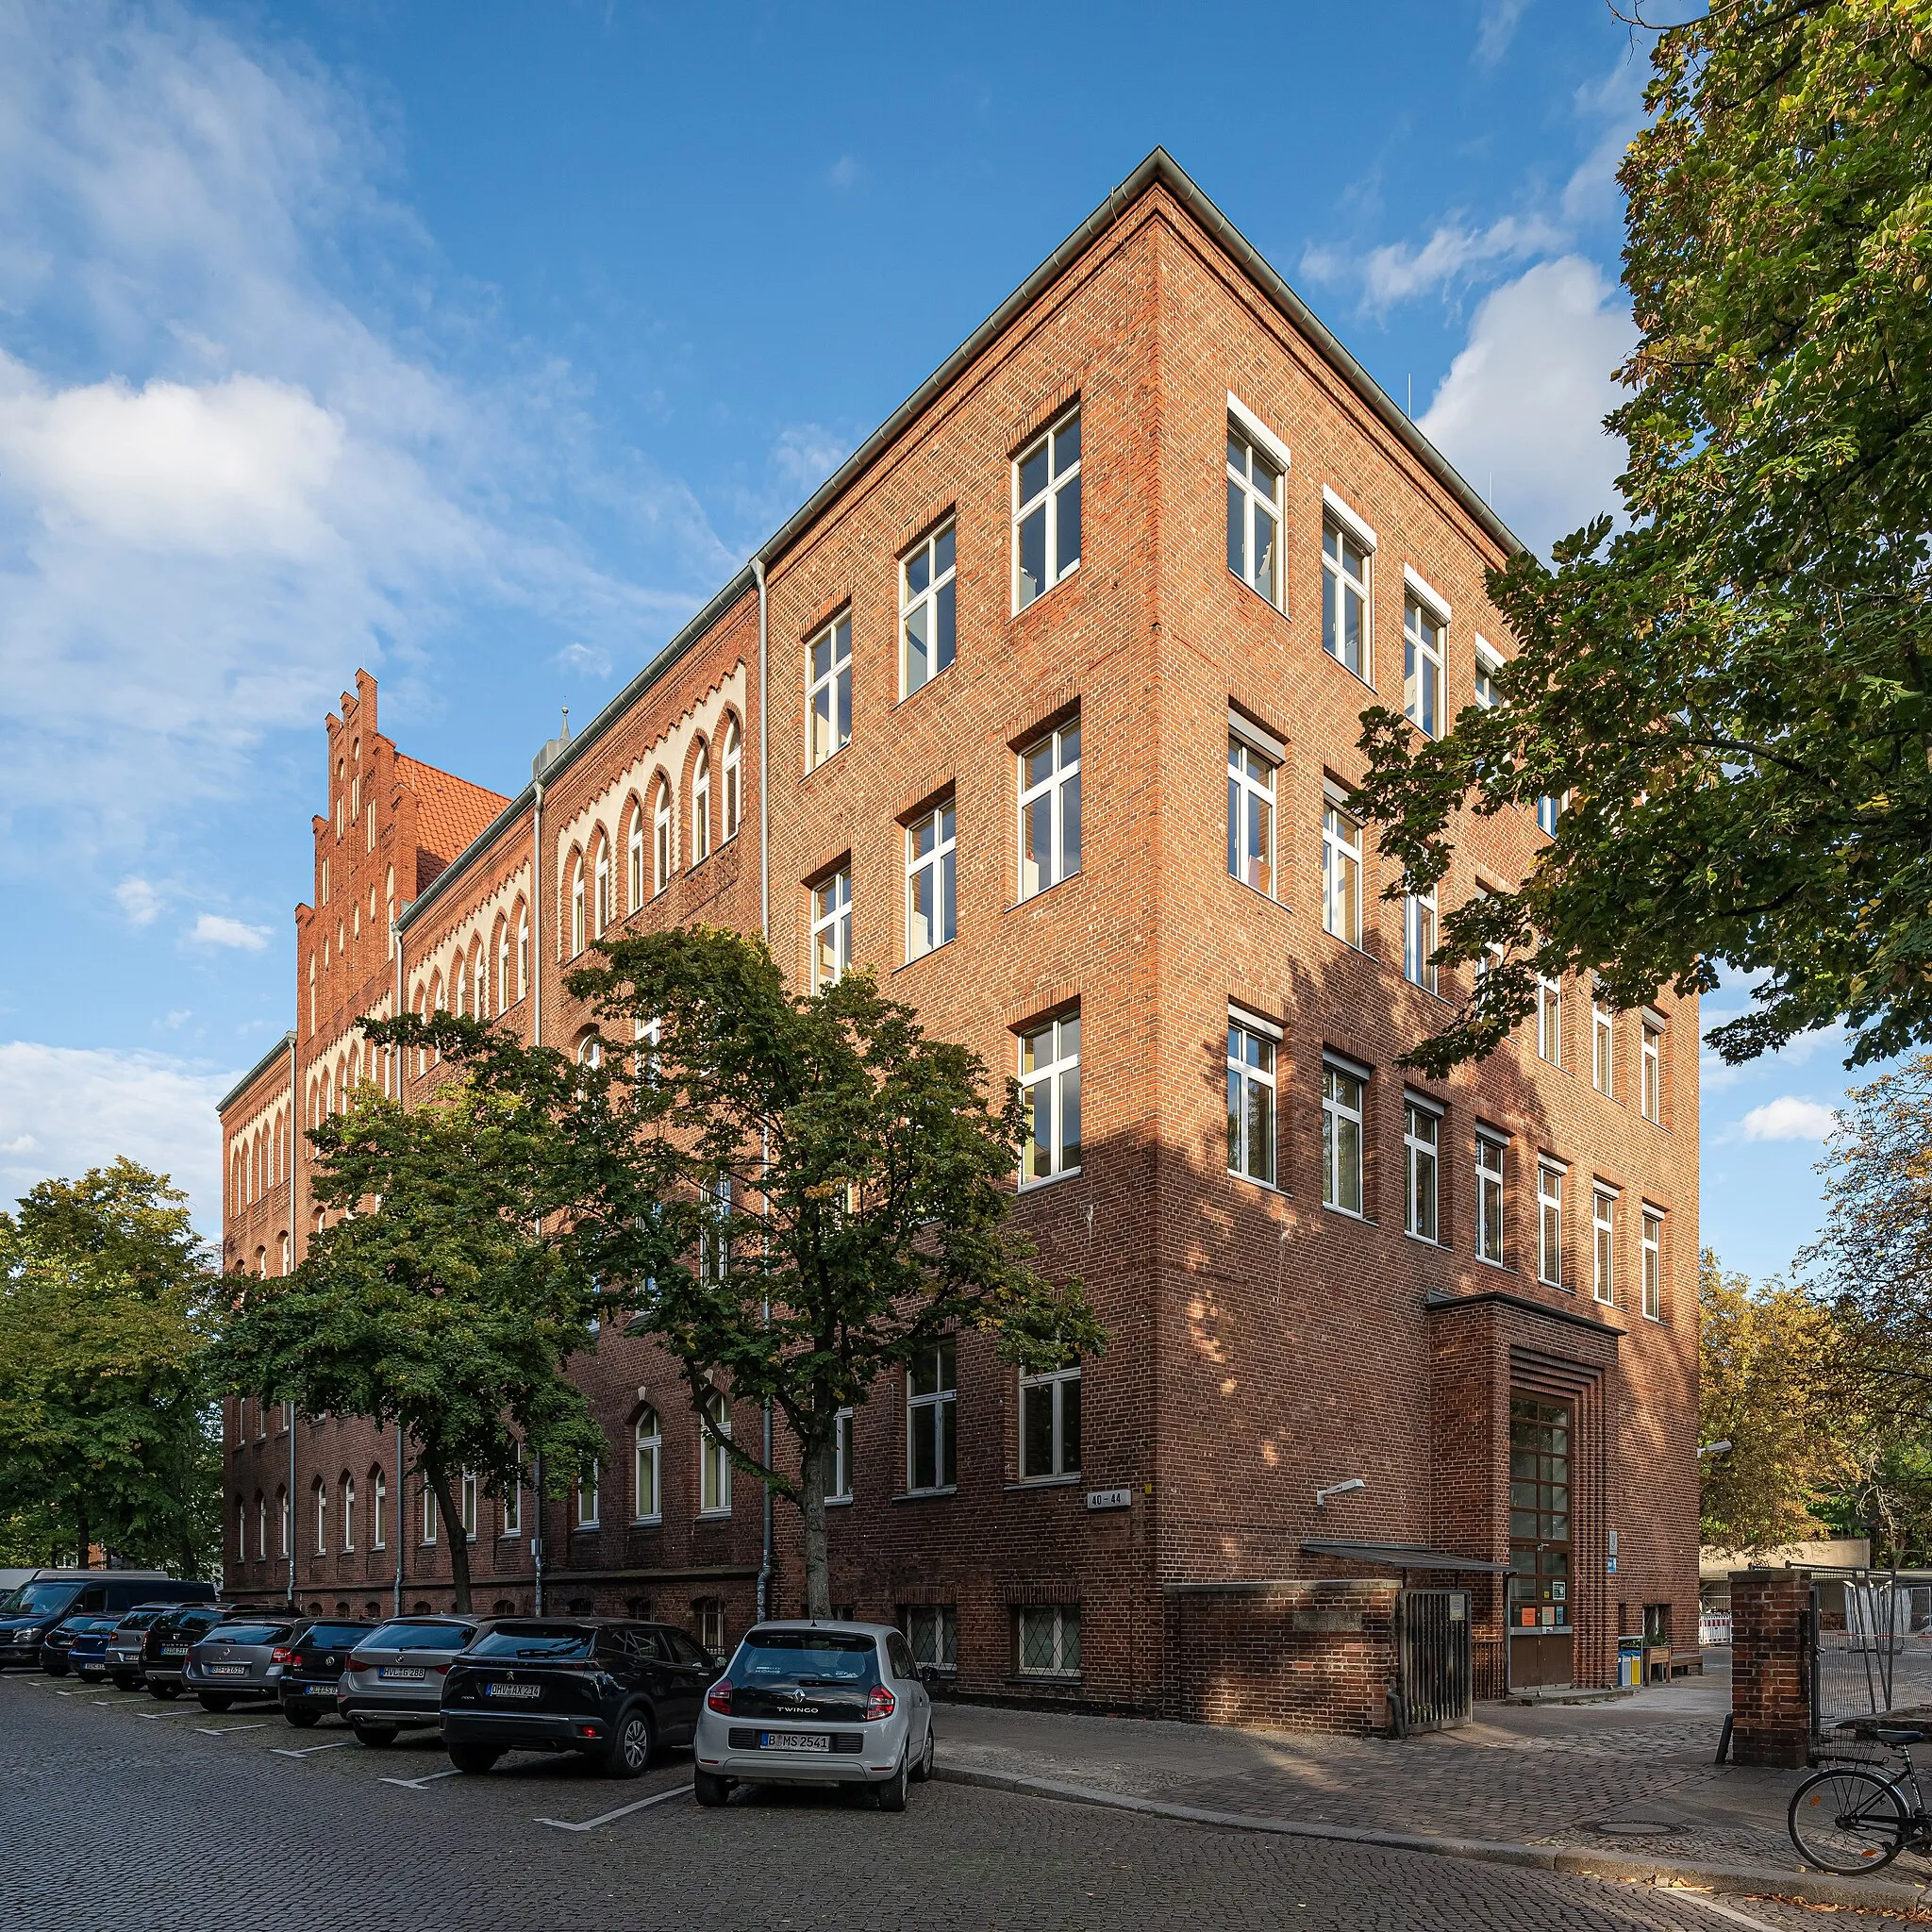 Photo showing: School building at Spandau in Berlin, Germany